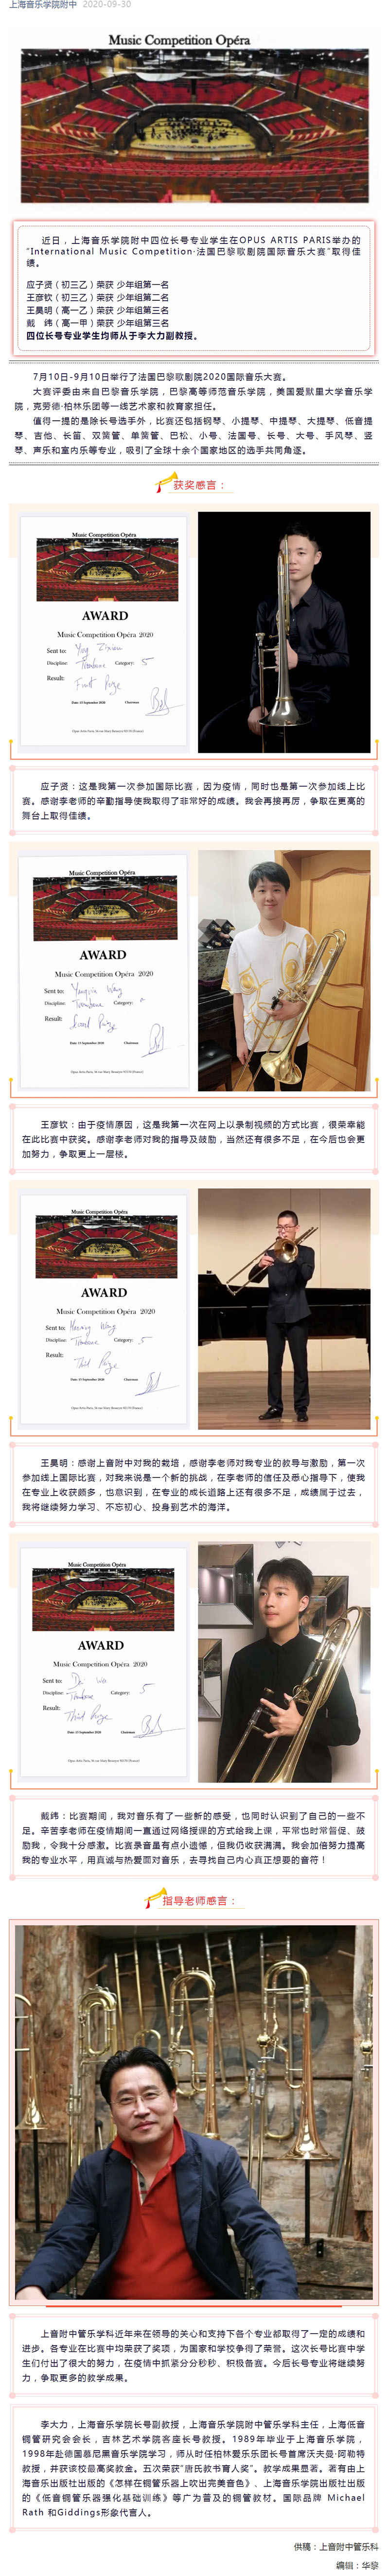 捷报-上音附中学子喜获法国巴黎歌剧院2020国际音乐大赛奖项